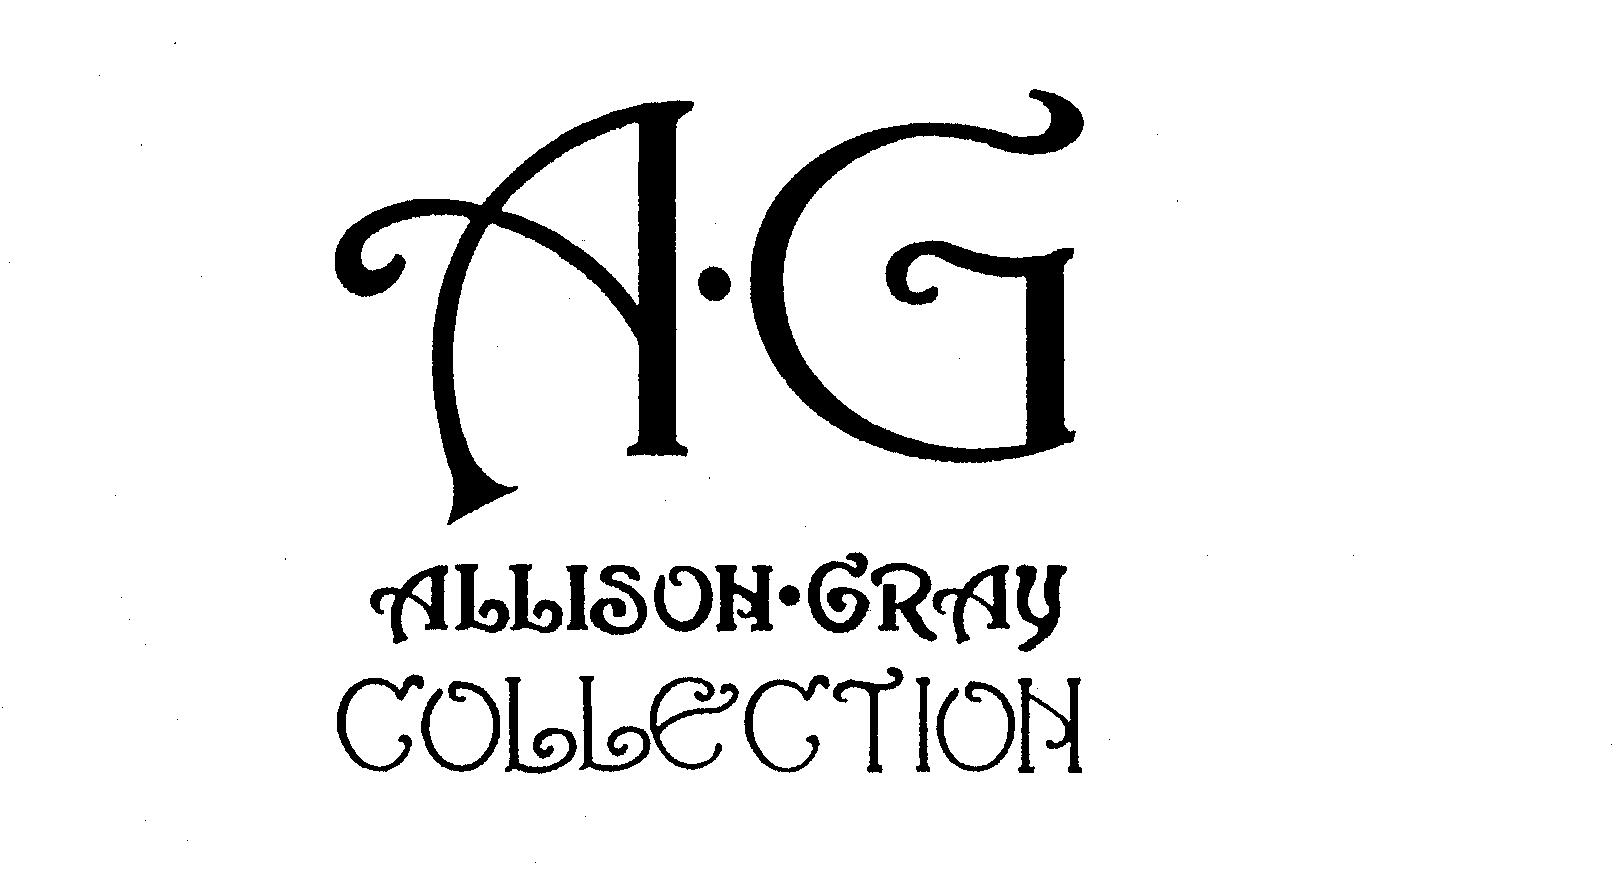 Trademark Logo A-G ALLISON-GRAY COLLECTION